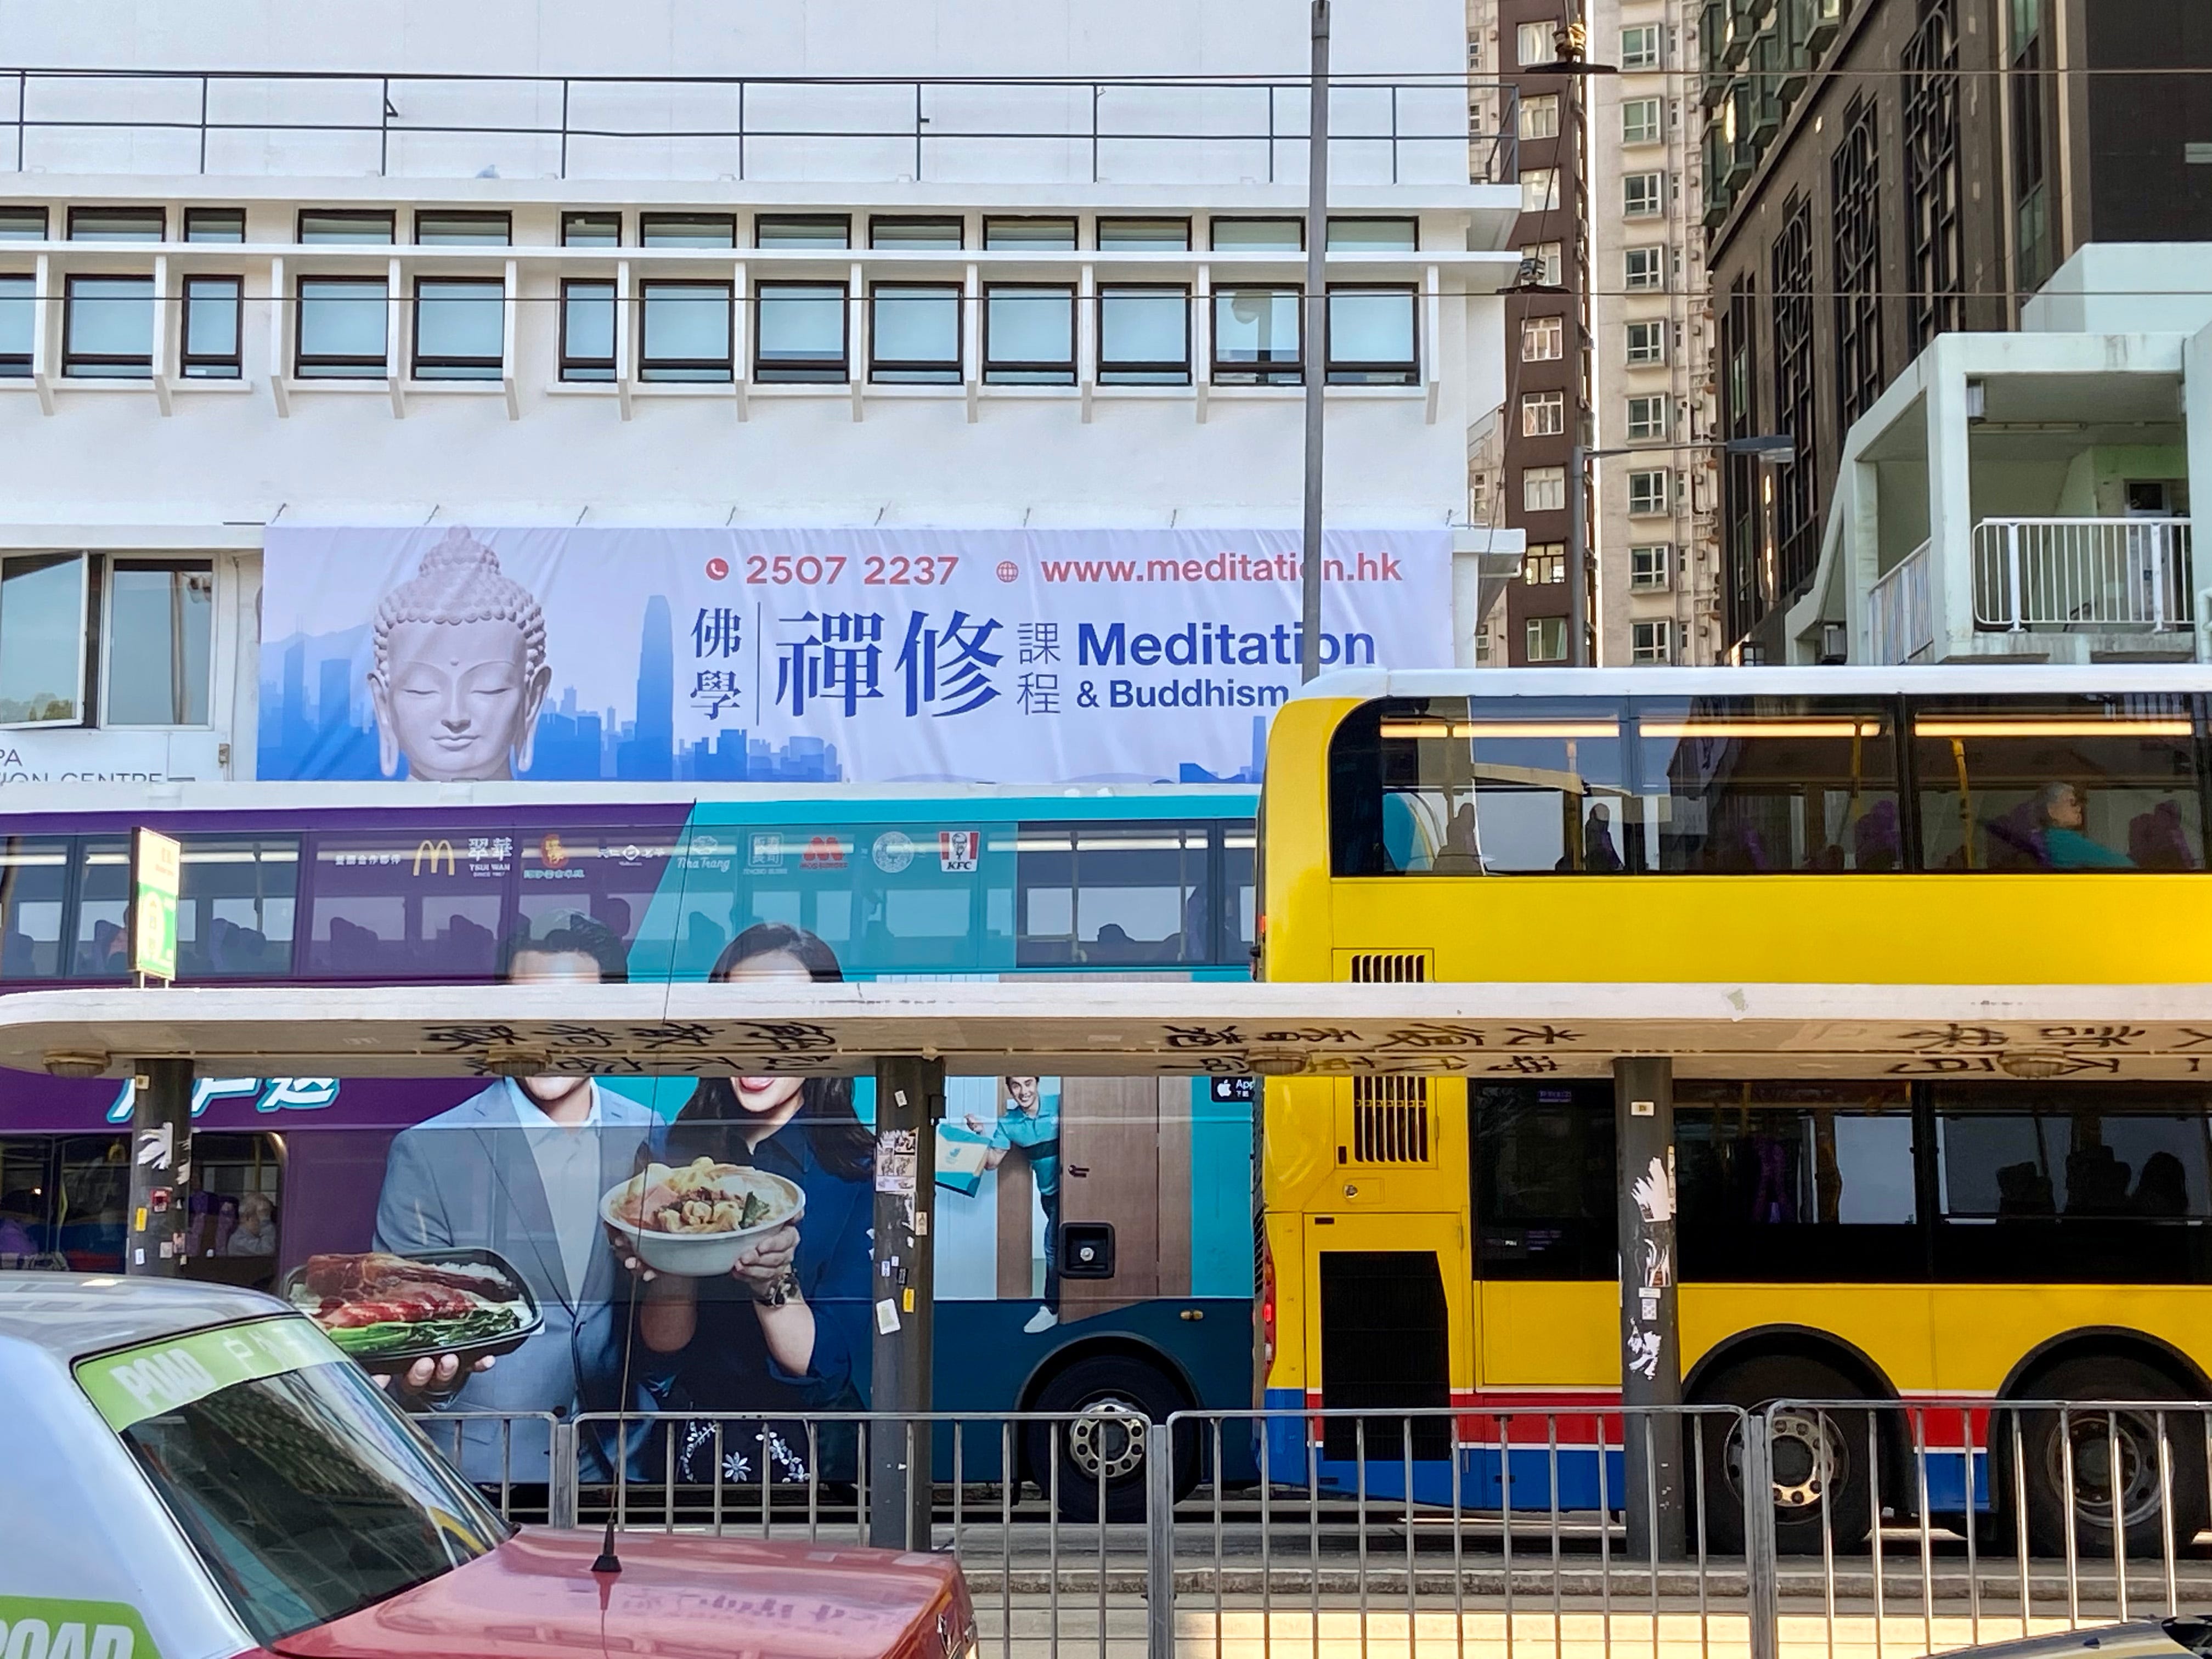 Bild von Bussen in Hongkong